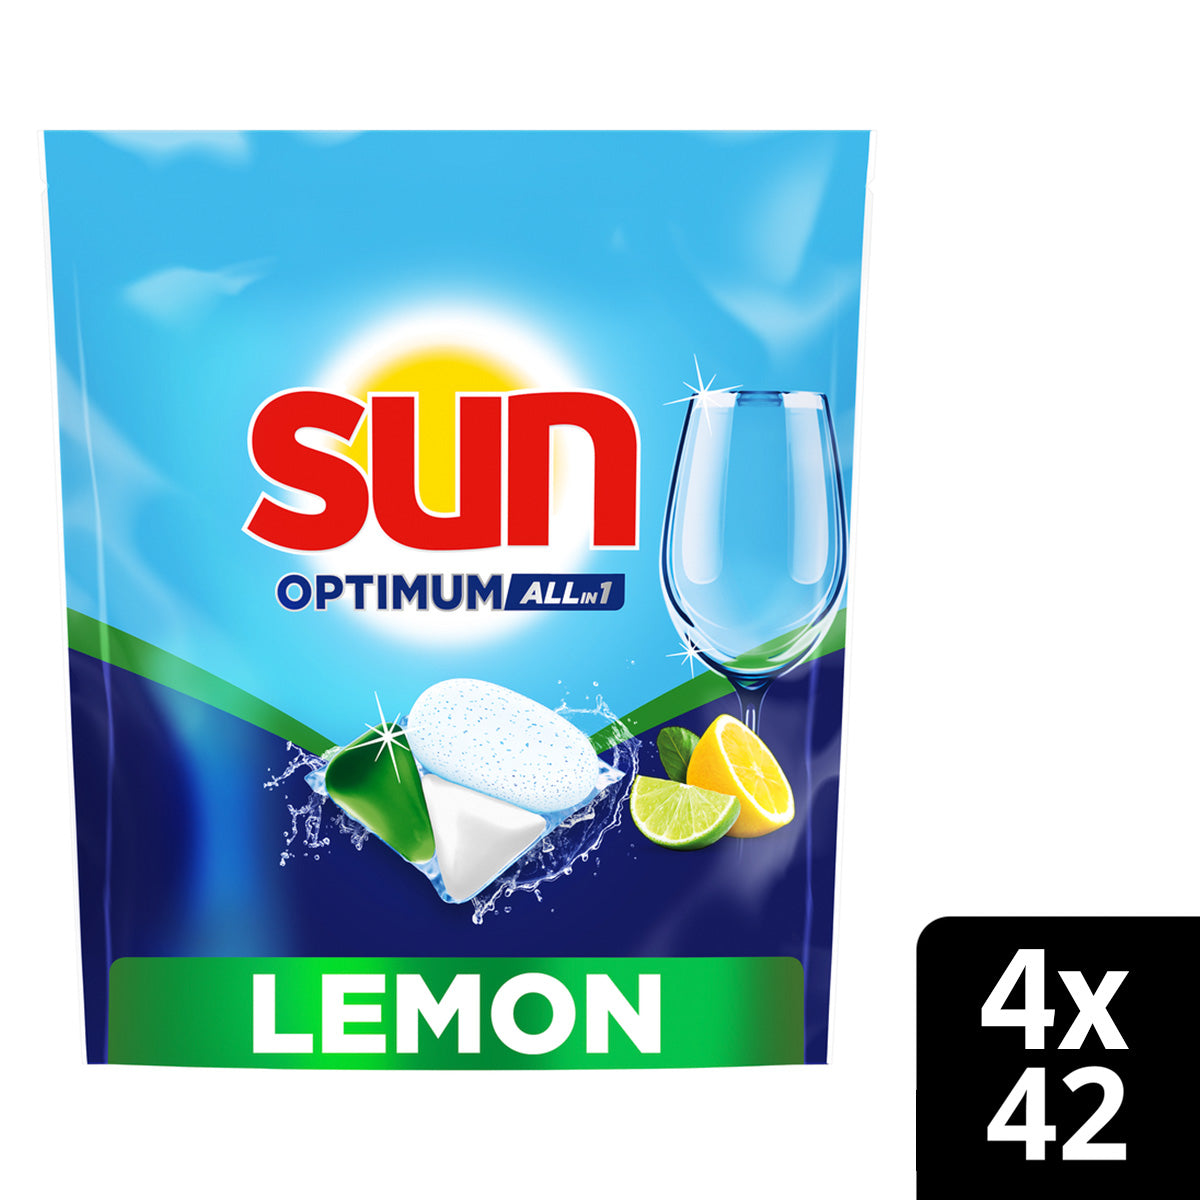 SUN Vaatwascapsules - Optimum Lemon